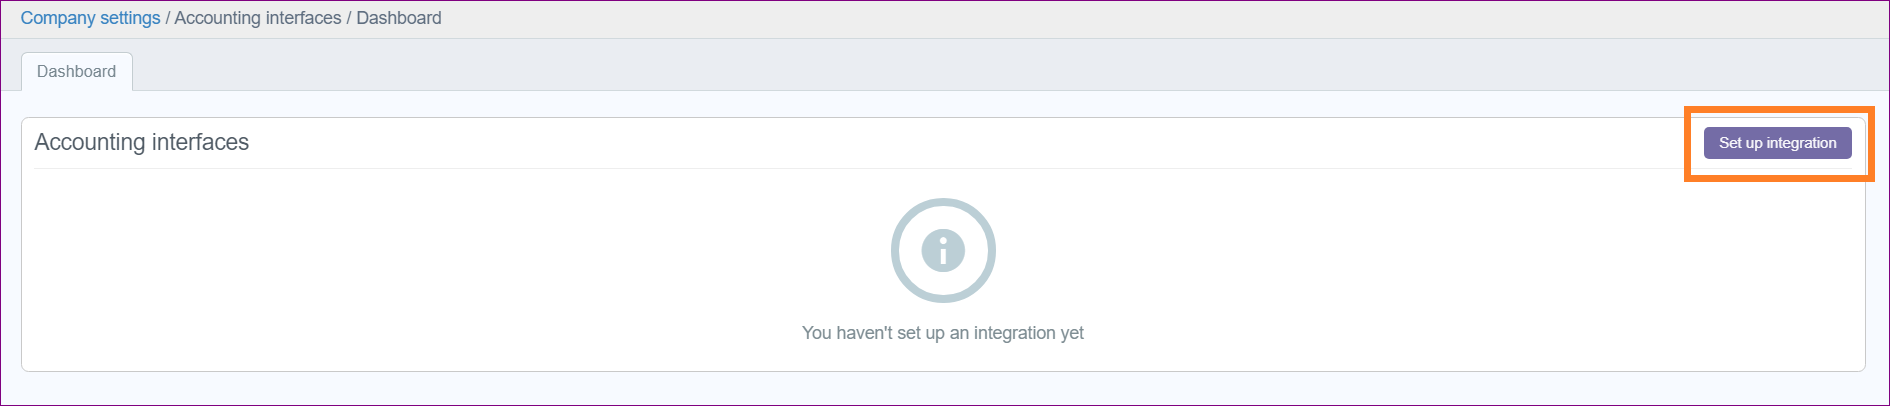 Integration_step_2.PNG